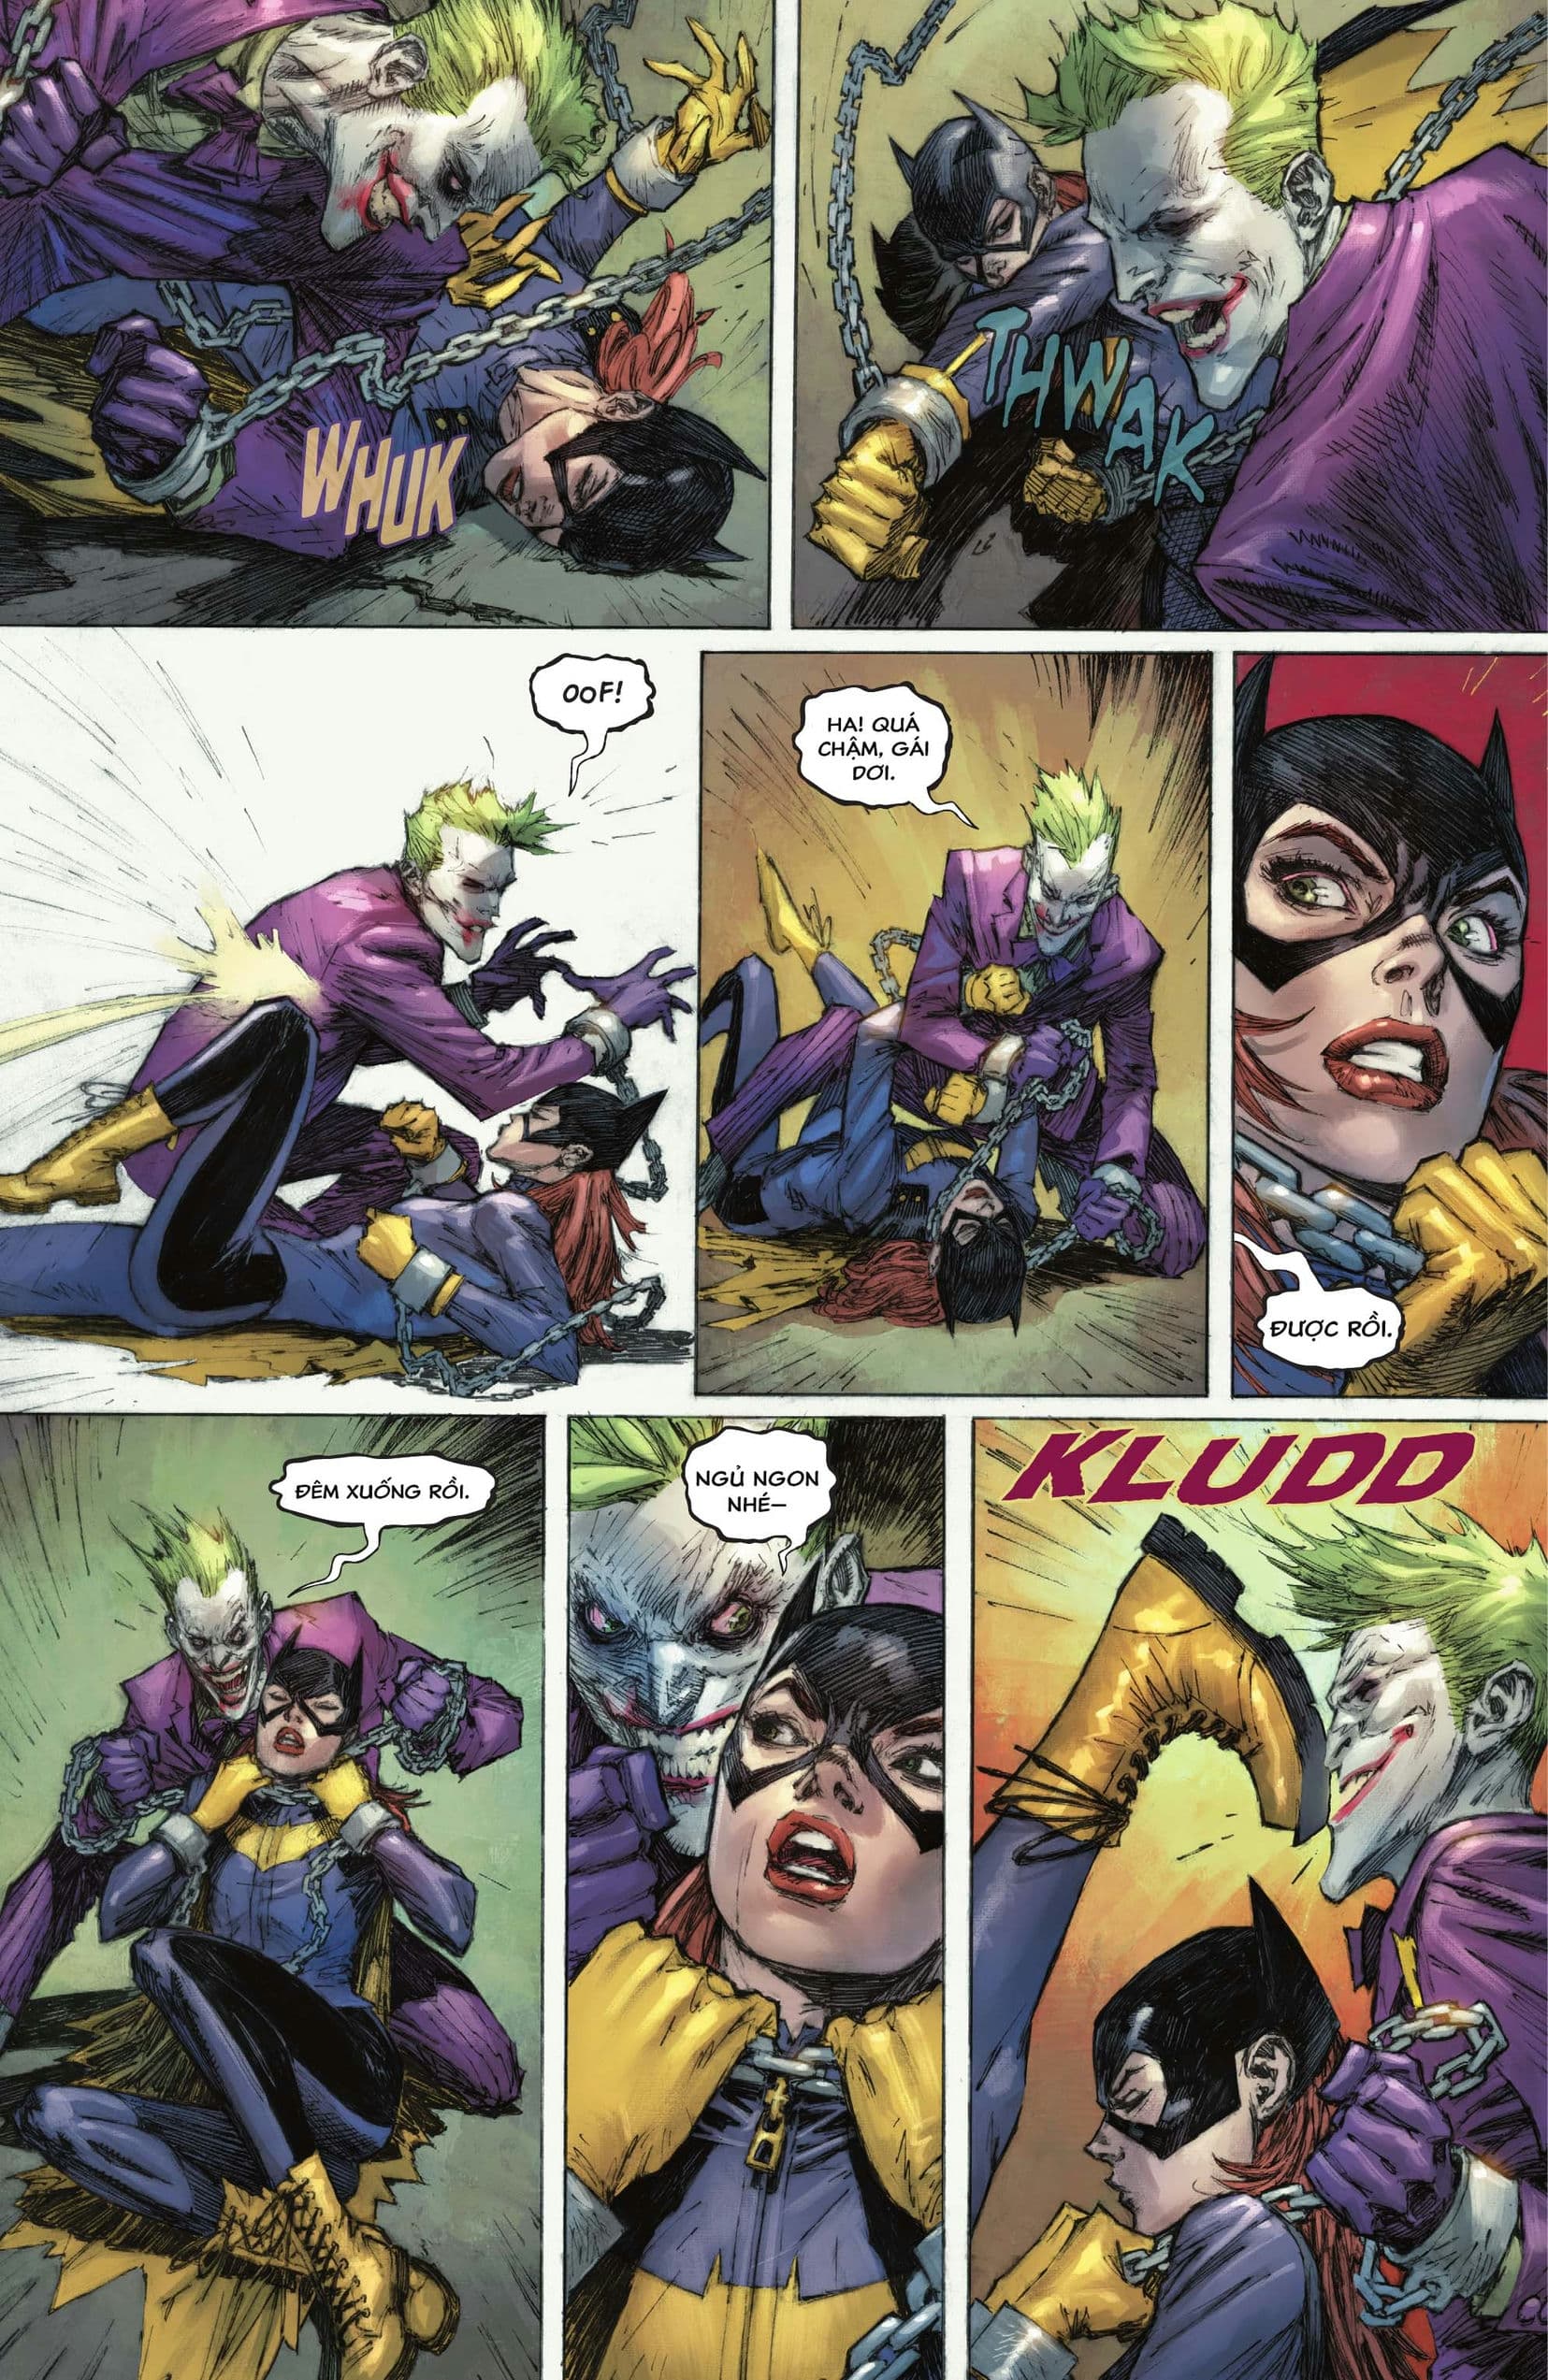 https://langgeek.net/wp-content/webpc-passthru.php?src=https://langgeek.net/wp-content/uploads/2023/04/Batman-_-The-Joker-The-Deadly-Duo-2022-005-014.jpg&nocache=1